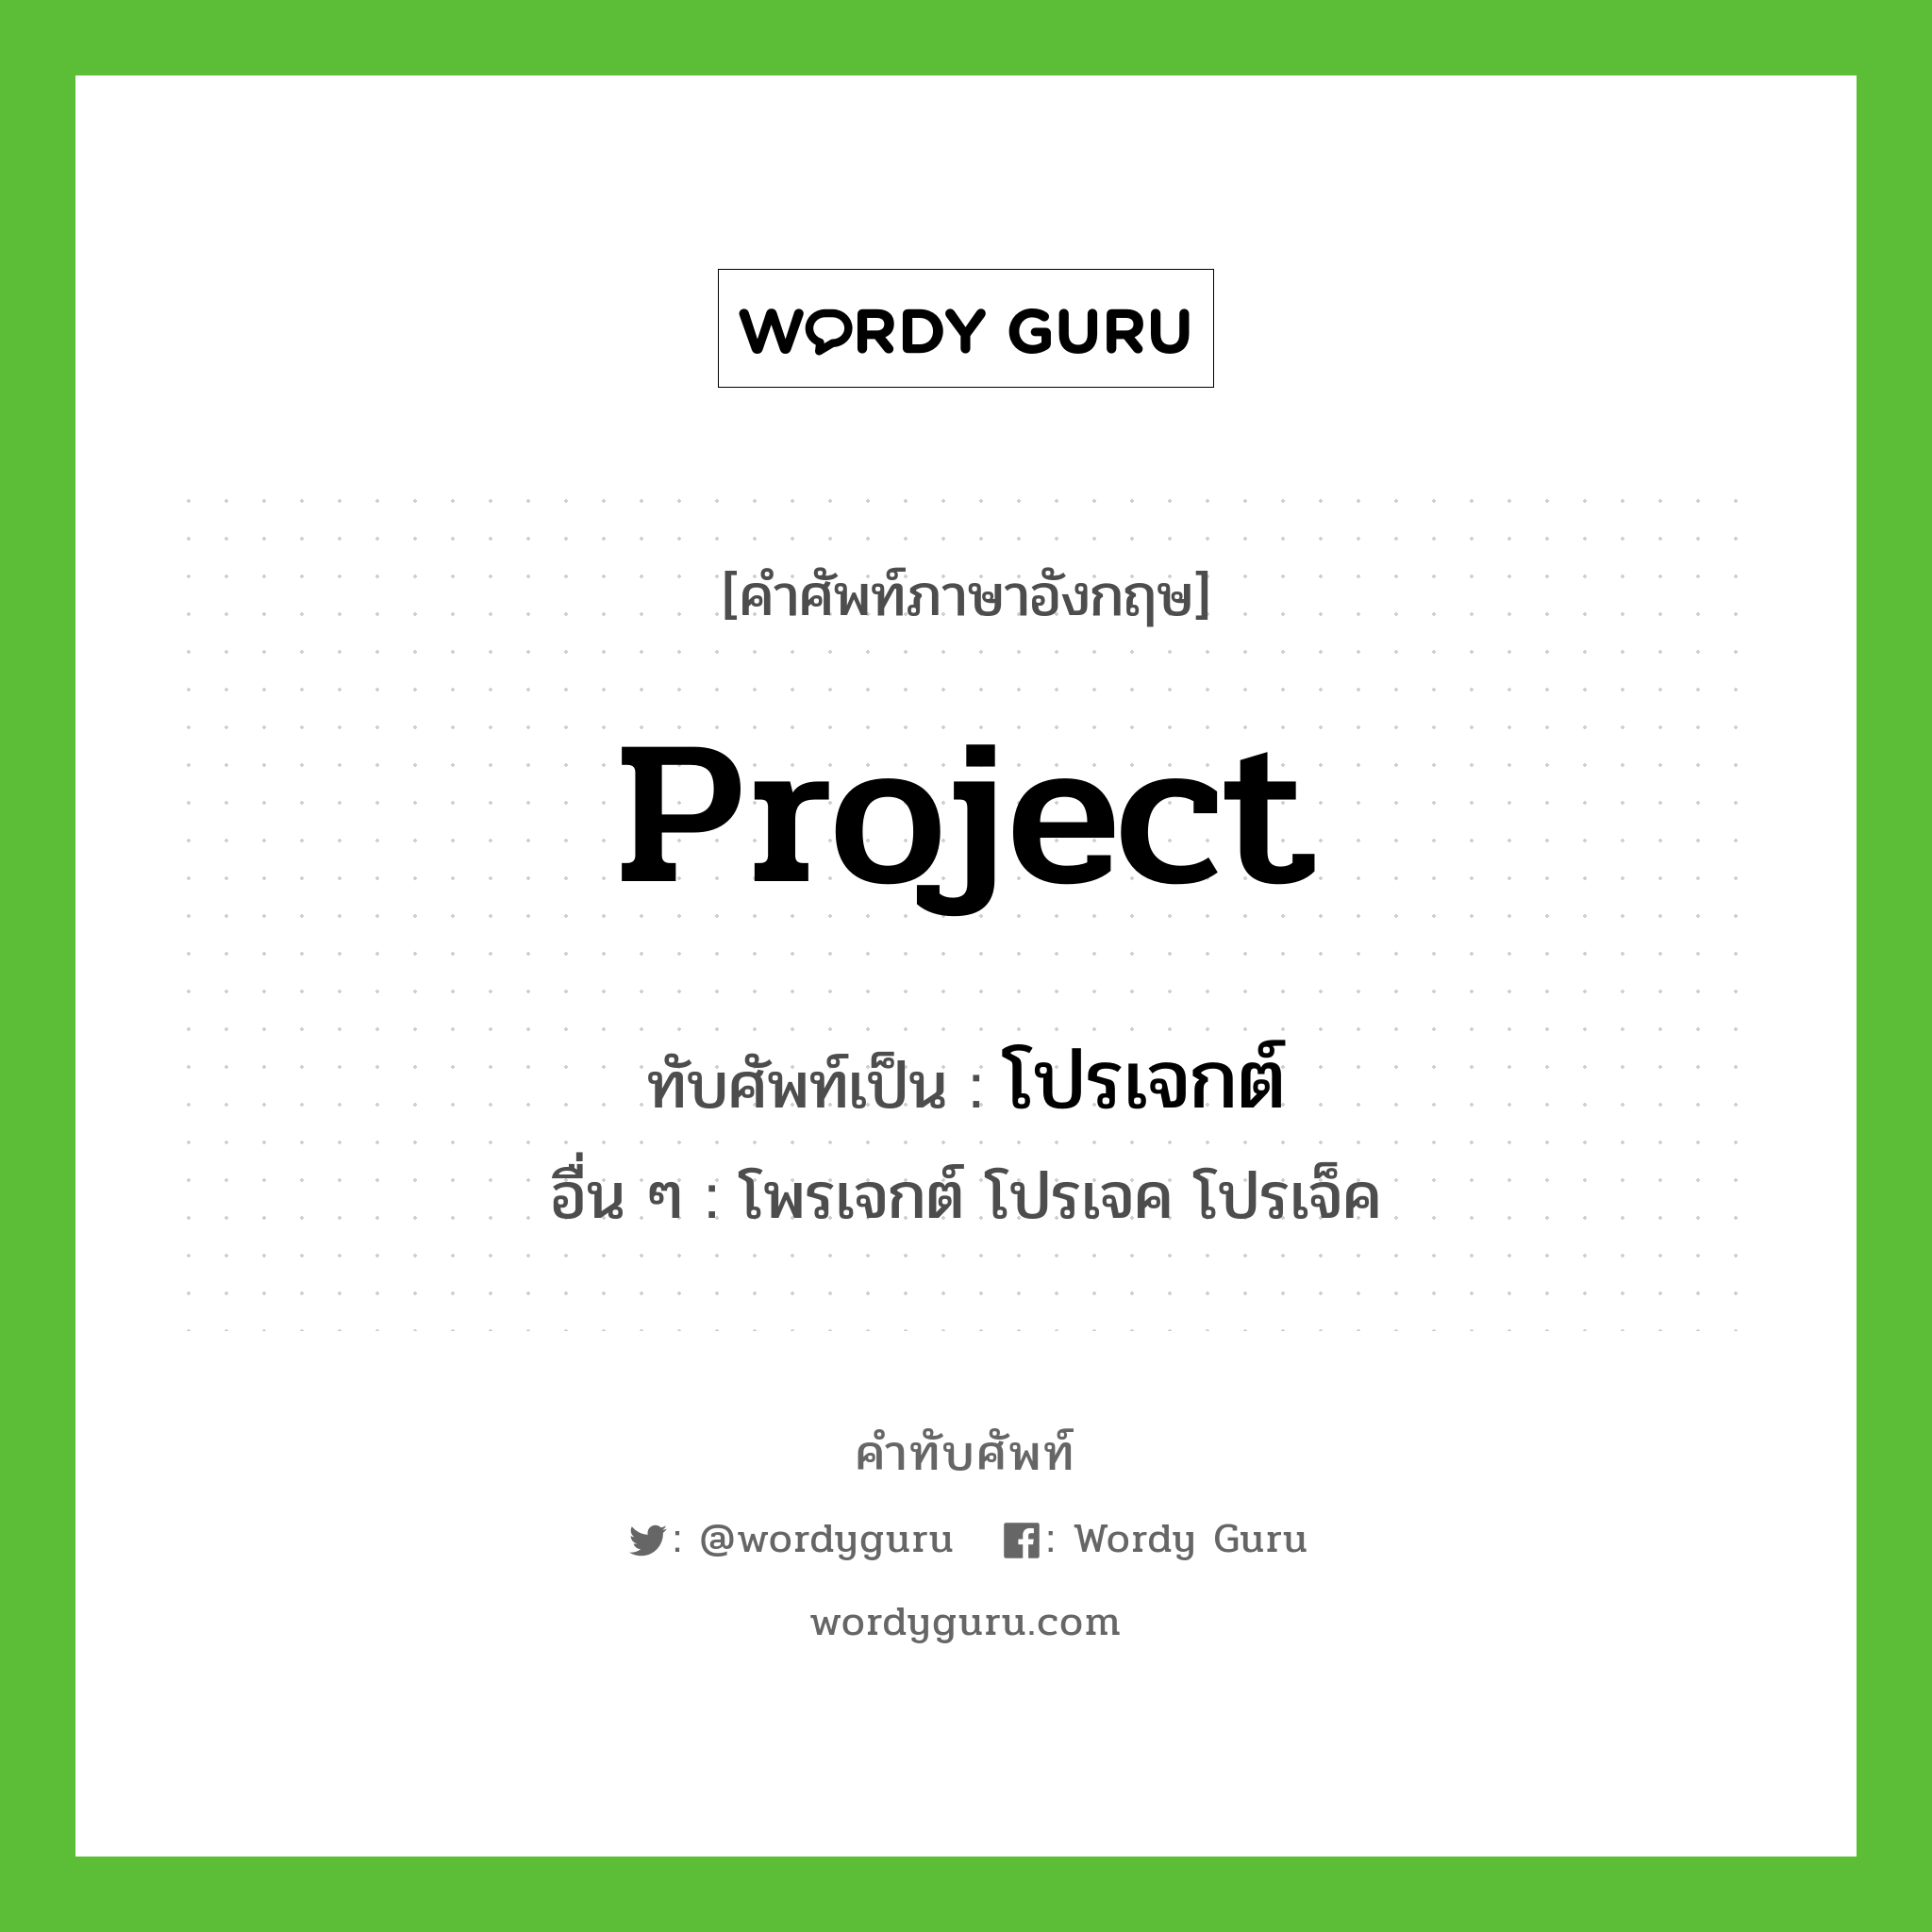 project เขียนเป็นคำไทยว่าอะไร?, คำศัพท์ภาษาอังกฤษ project ทับศัพท์เป็น โปรเจกต์ อื่น ๆ โพรเจกต์ โปรเจค โปรเจ็ค